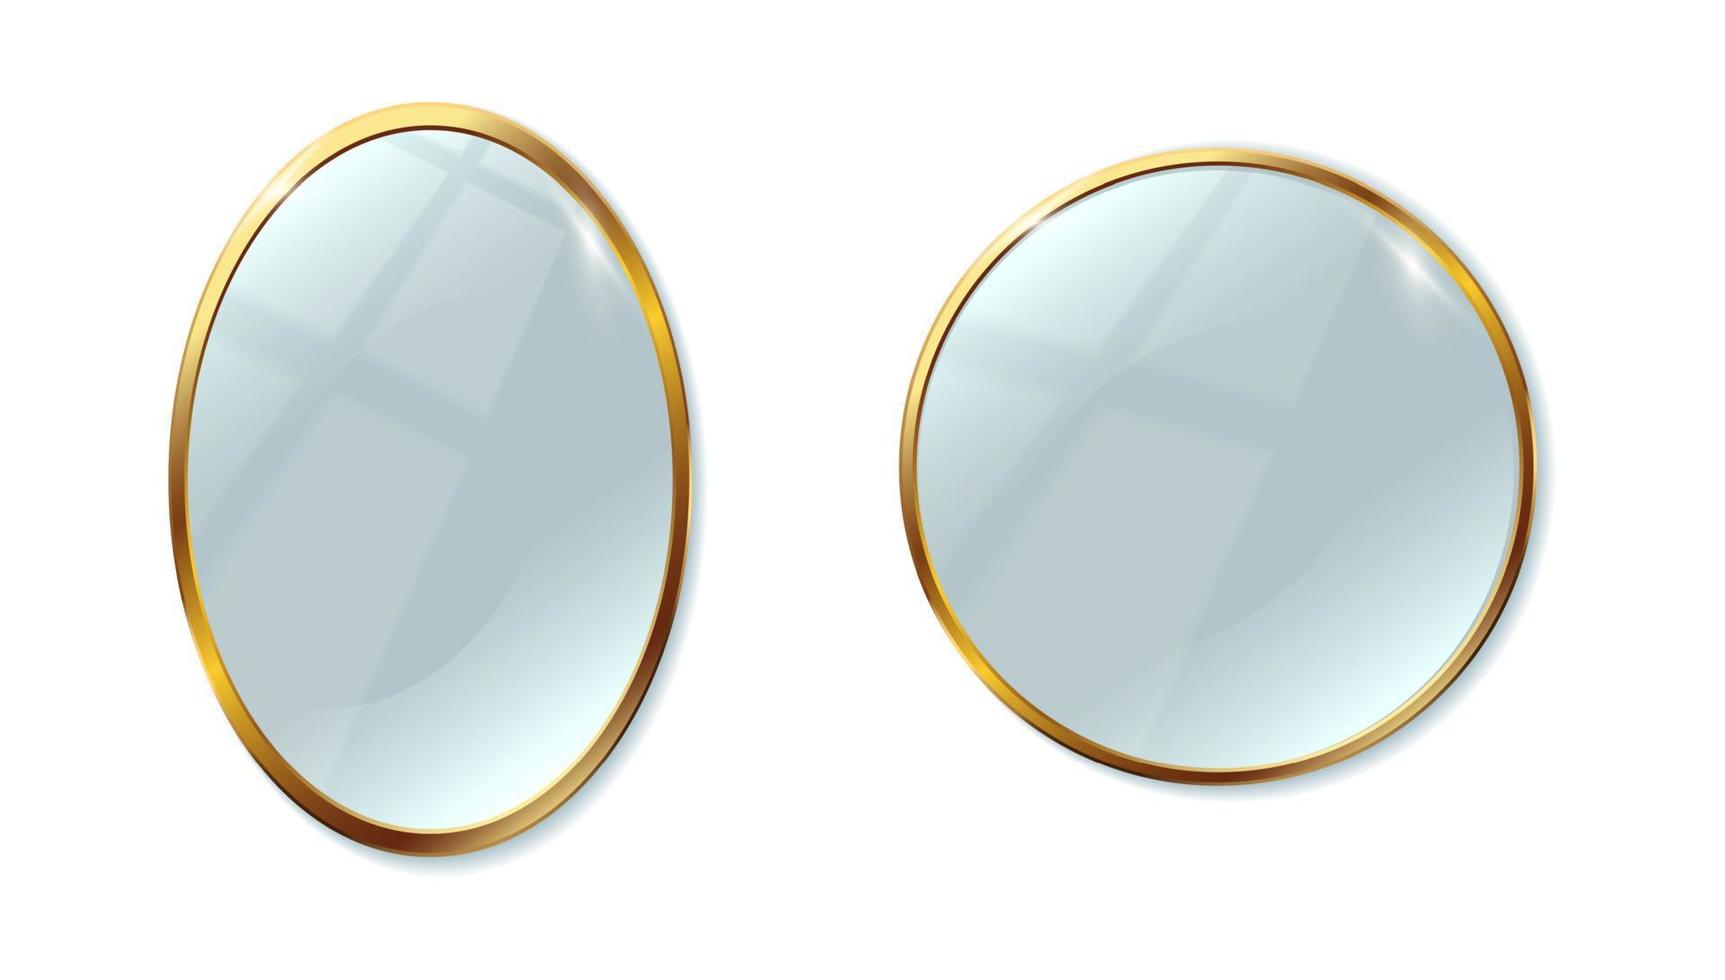 Jeu d'icônes vectorielles réalistes 3d. deux miroirs avec cadre doré ovale et rond. isolé sur fond blanc. vecteur